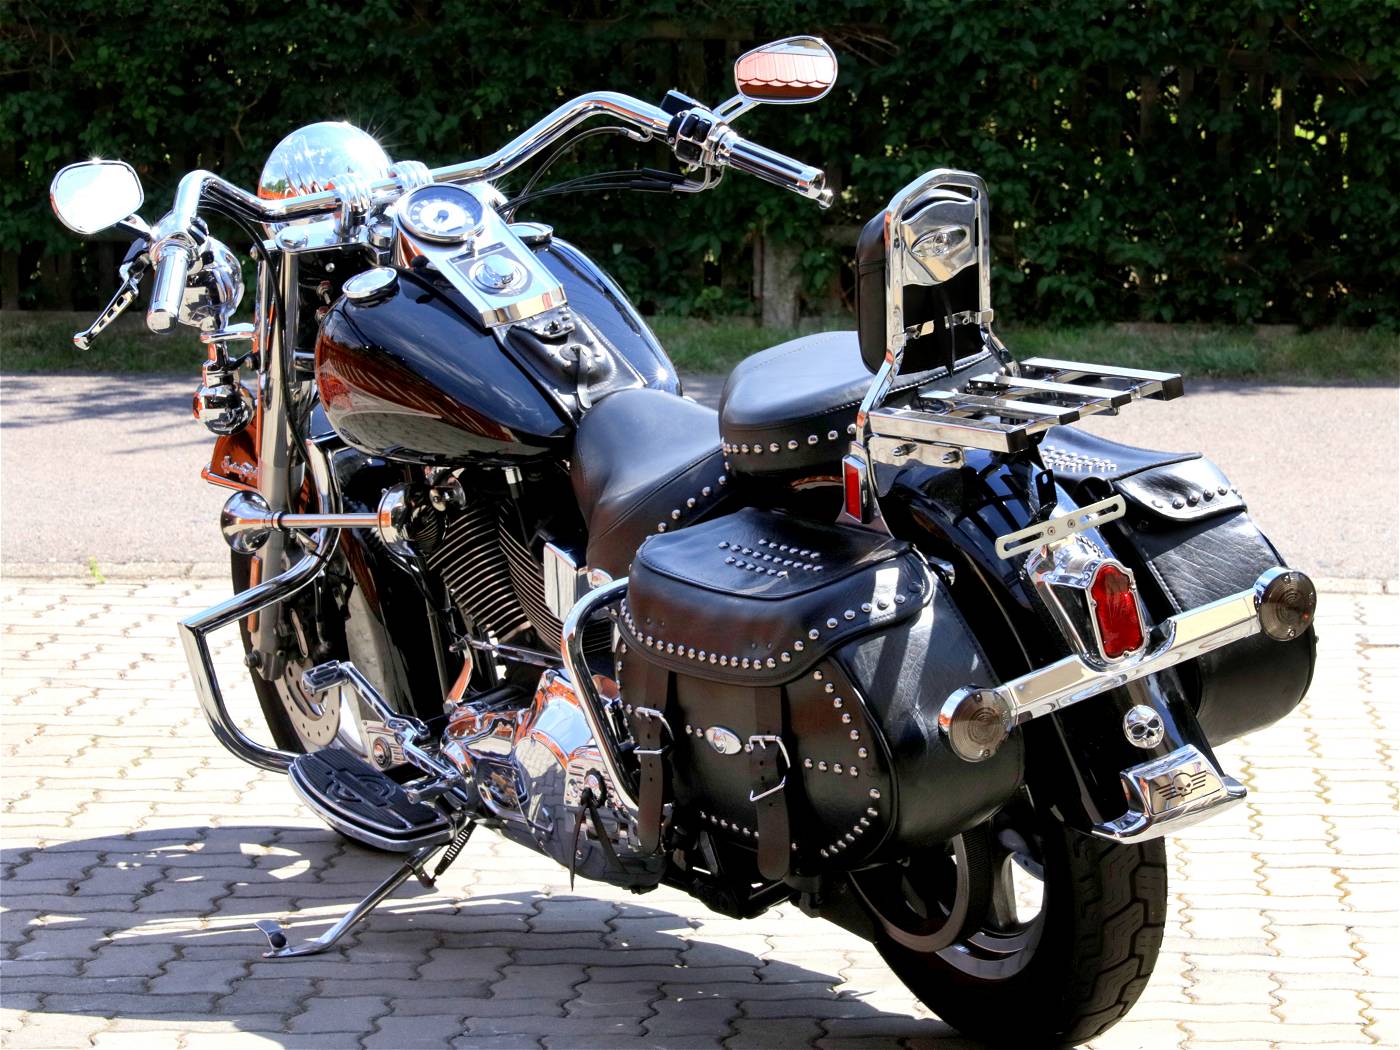 Bild-14: Seitenansicht - Harley Davidson Super-Glide mit Satteltaschen